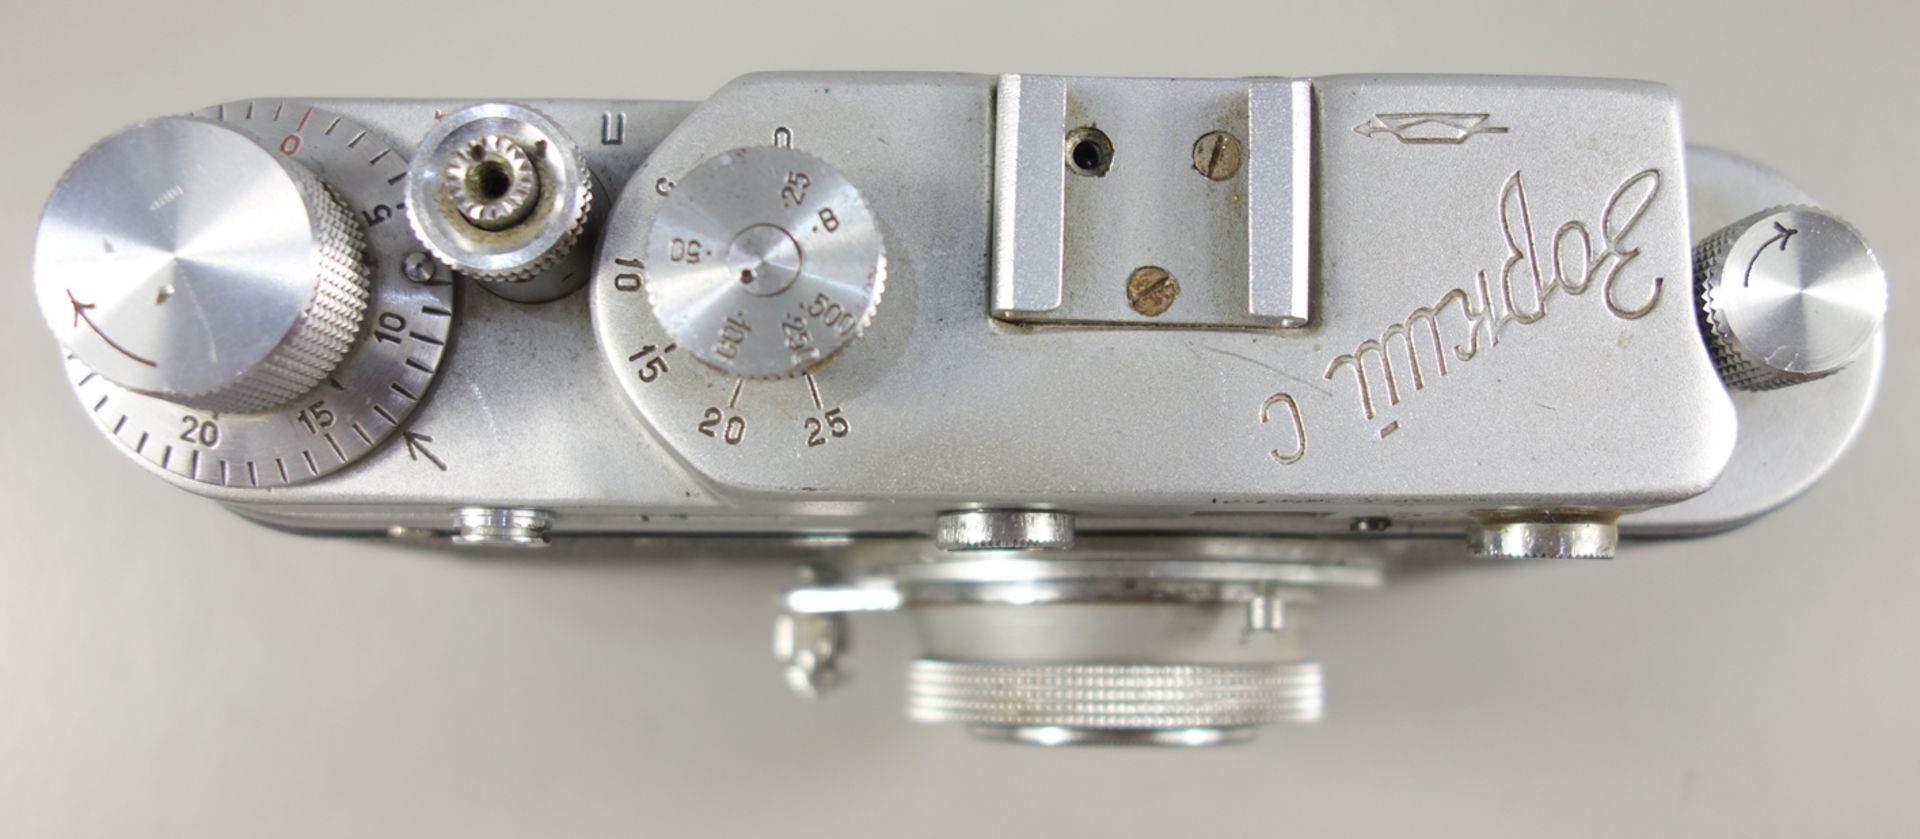 Messsucherkamera KMZ Zorki C, späte 1950er Jahre, russische Leica-Kopie, Serien-Nr. 57205843, - Image 2 of 4